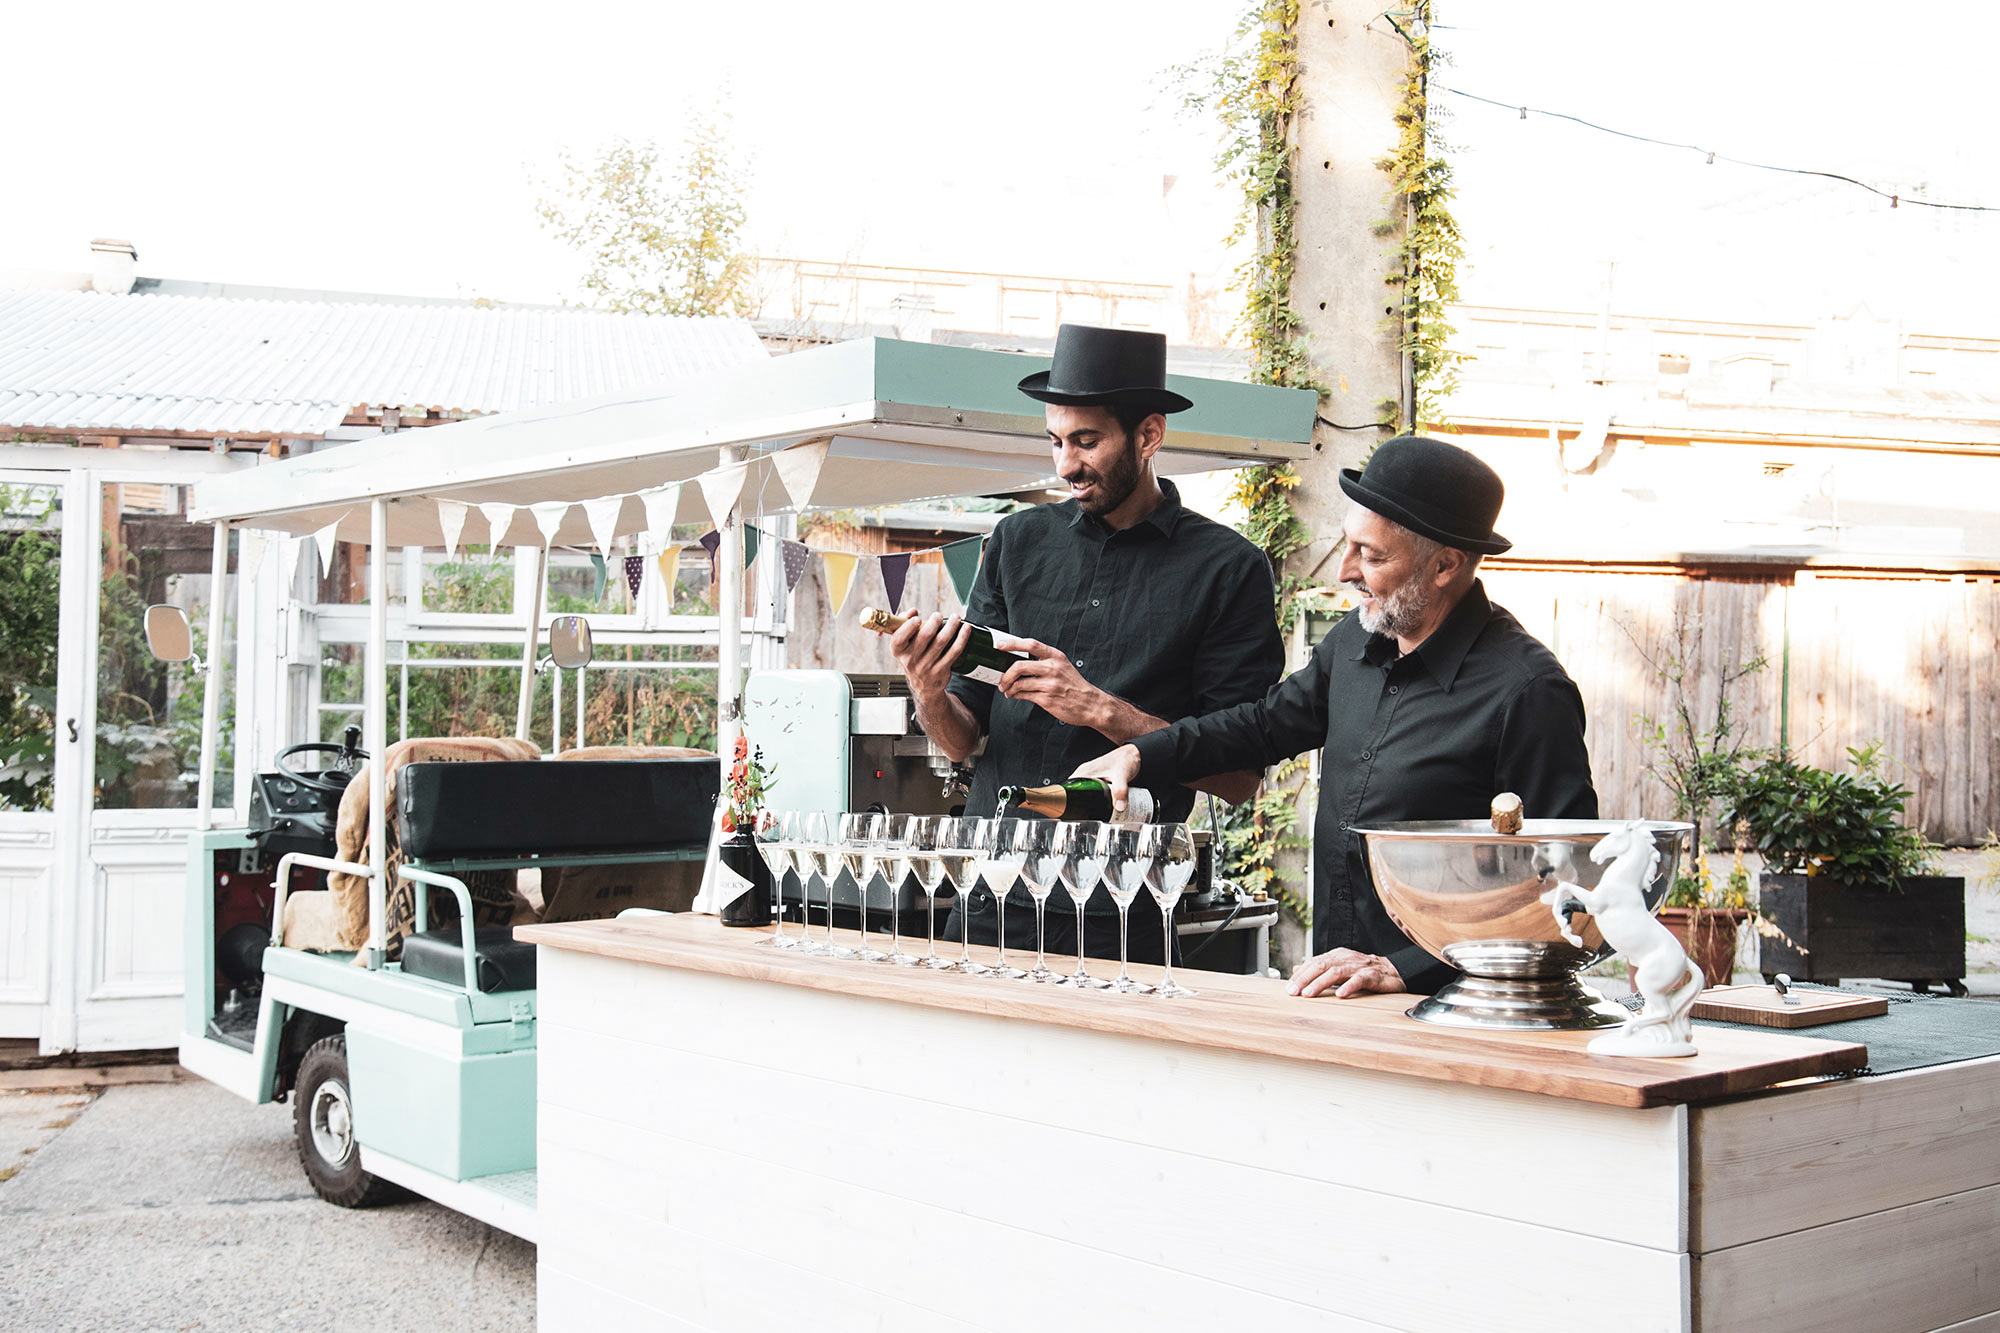 Sektempfang auf dem Tresen des mobilen Cocktail- und Kaffeemobils in der Hochzeitslocation Oberhafen Kantine Berlin